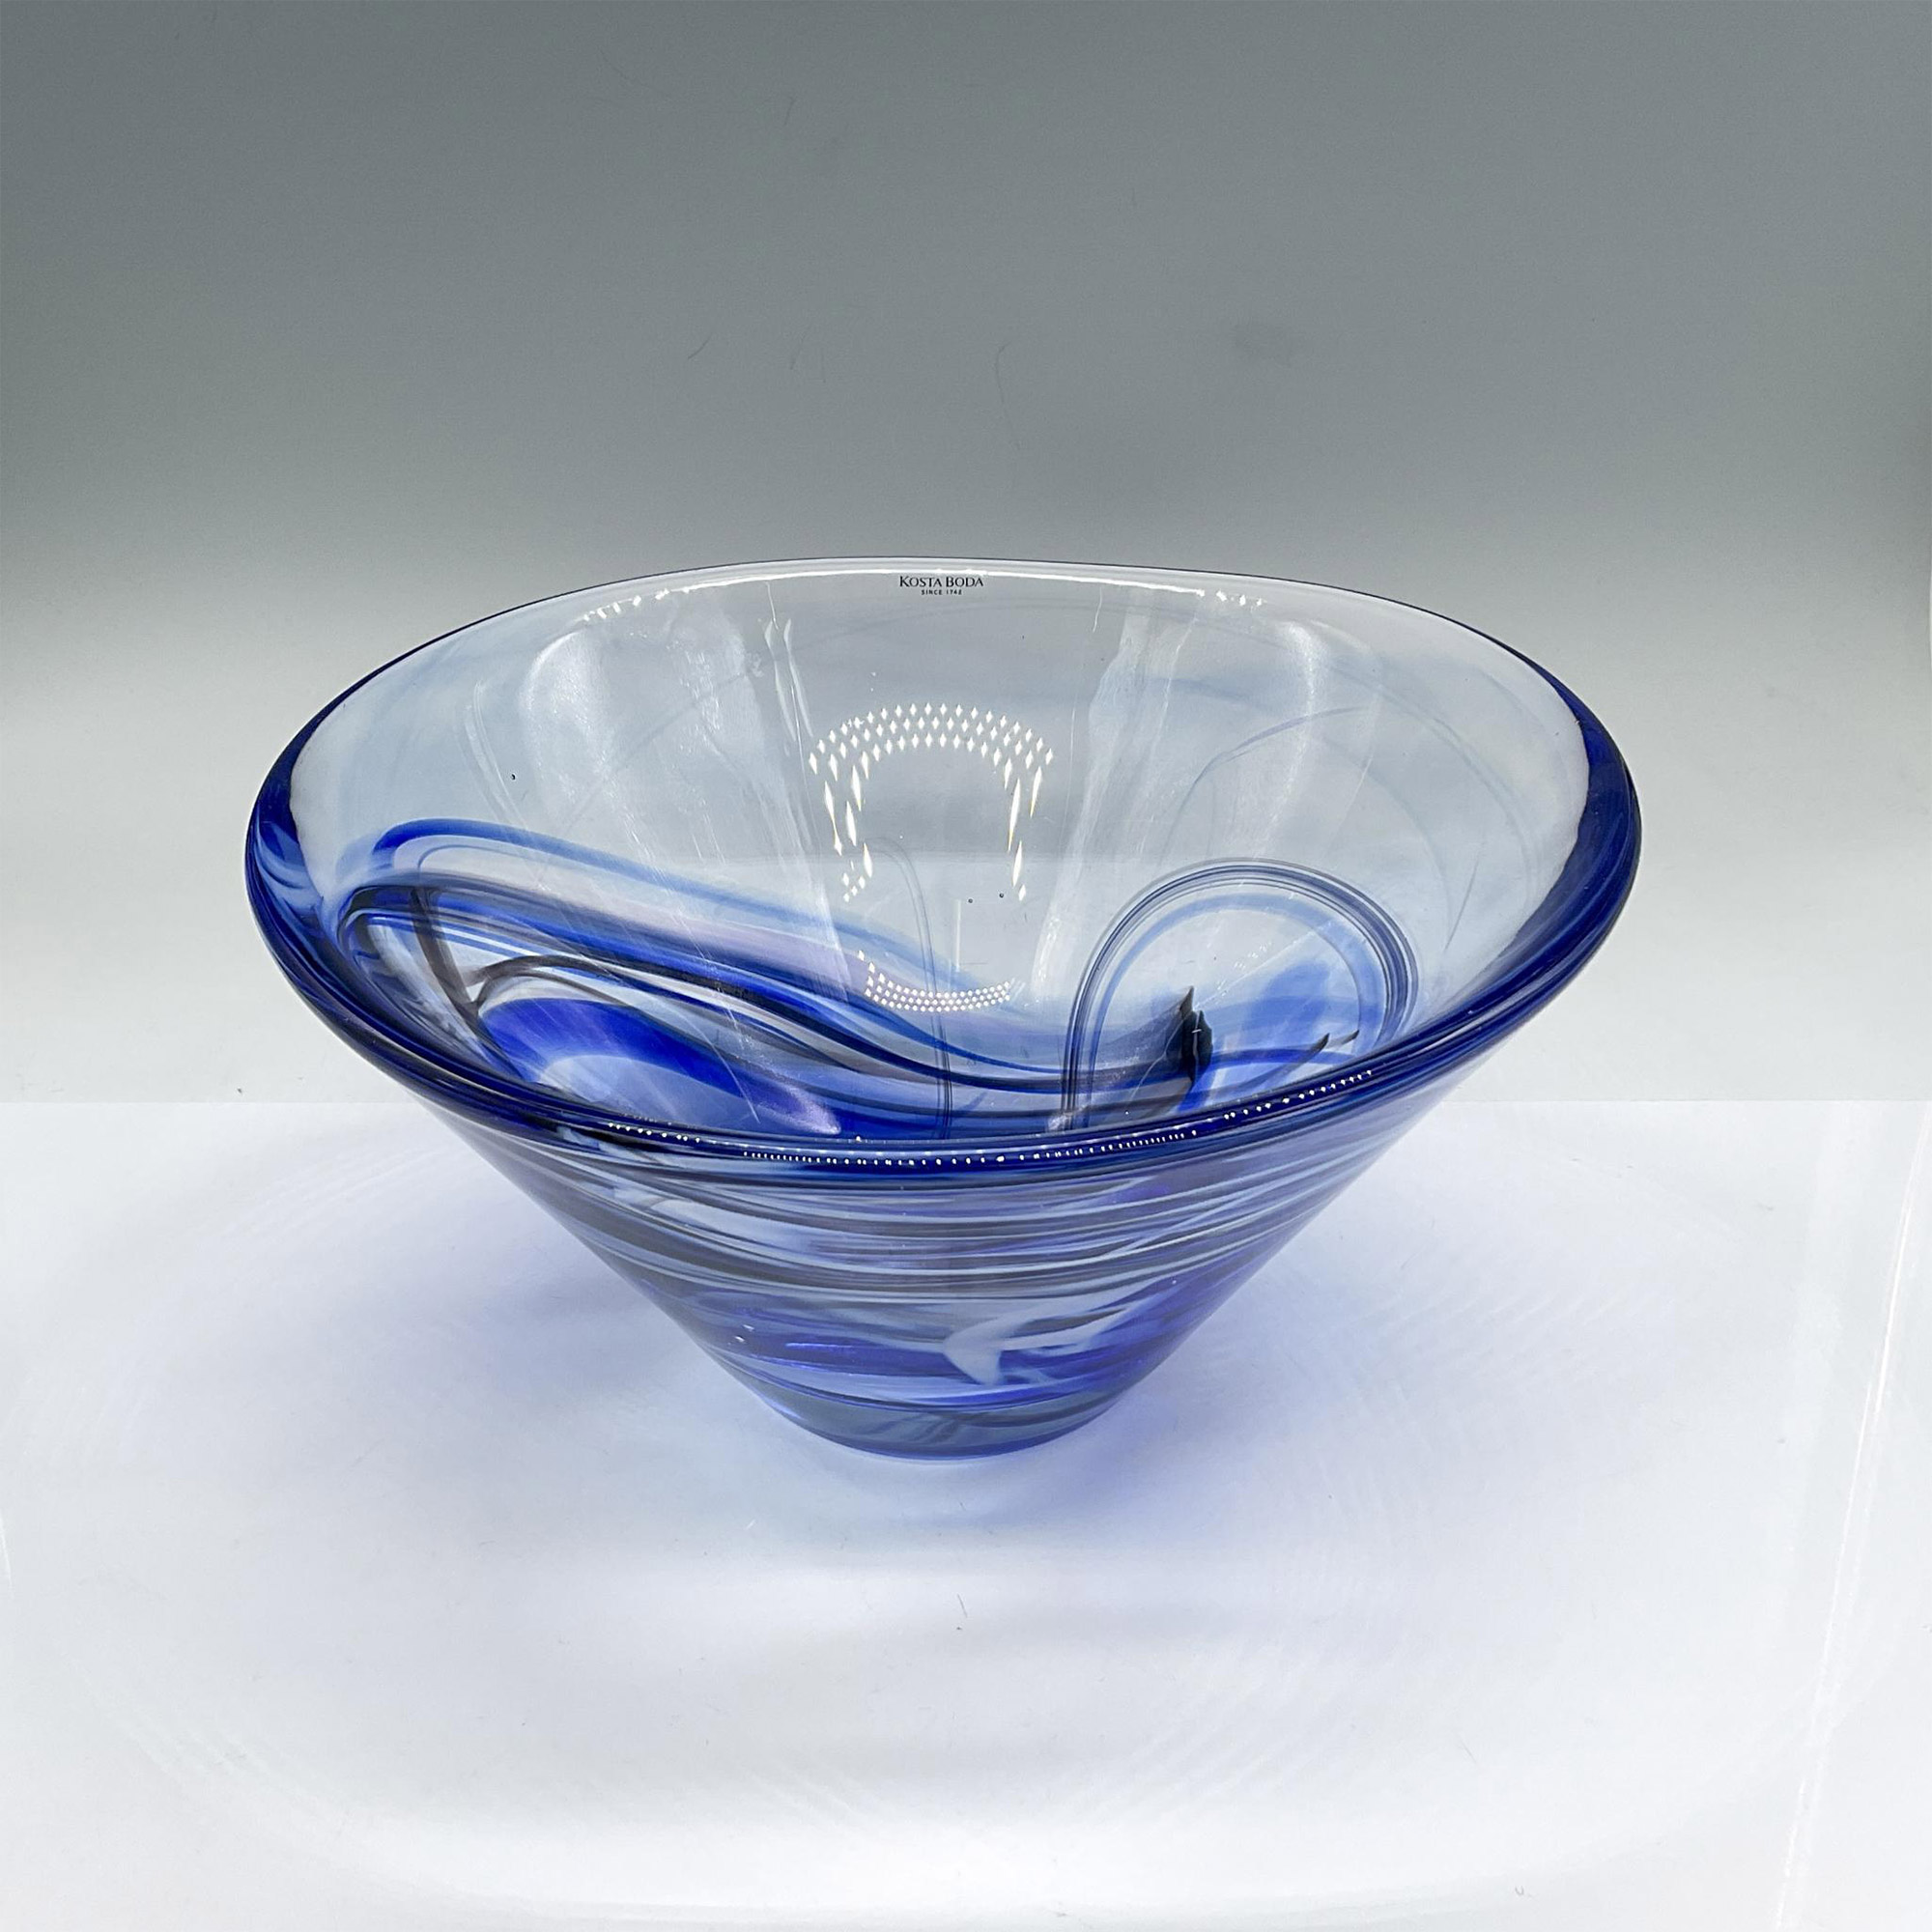 Kosta Boda Glass Bowl, Blue Swirls - Image 2 of 3